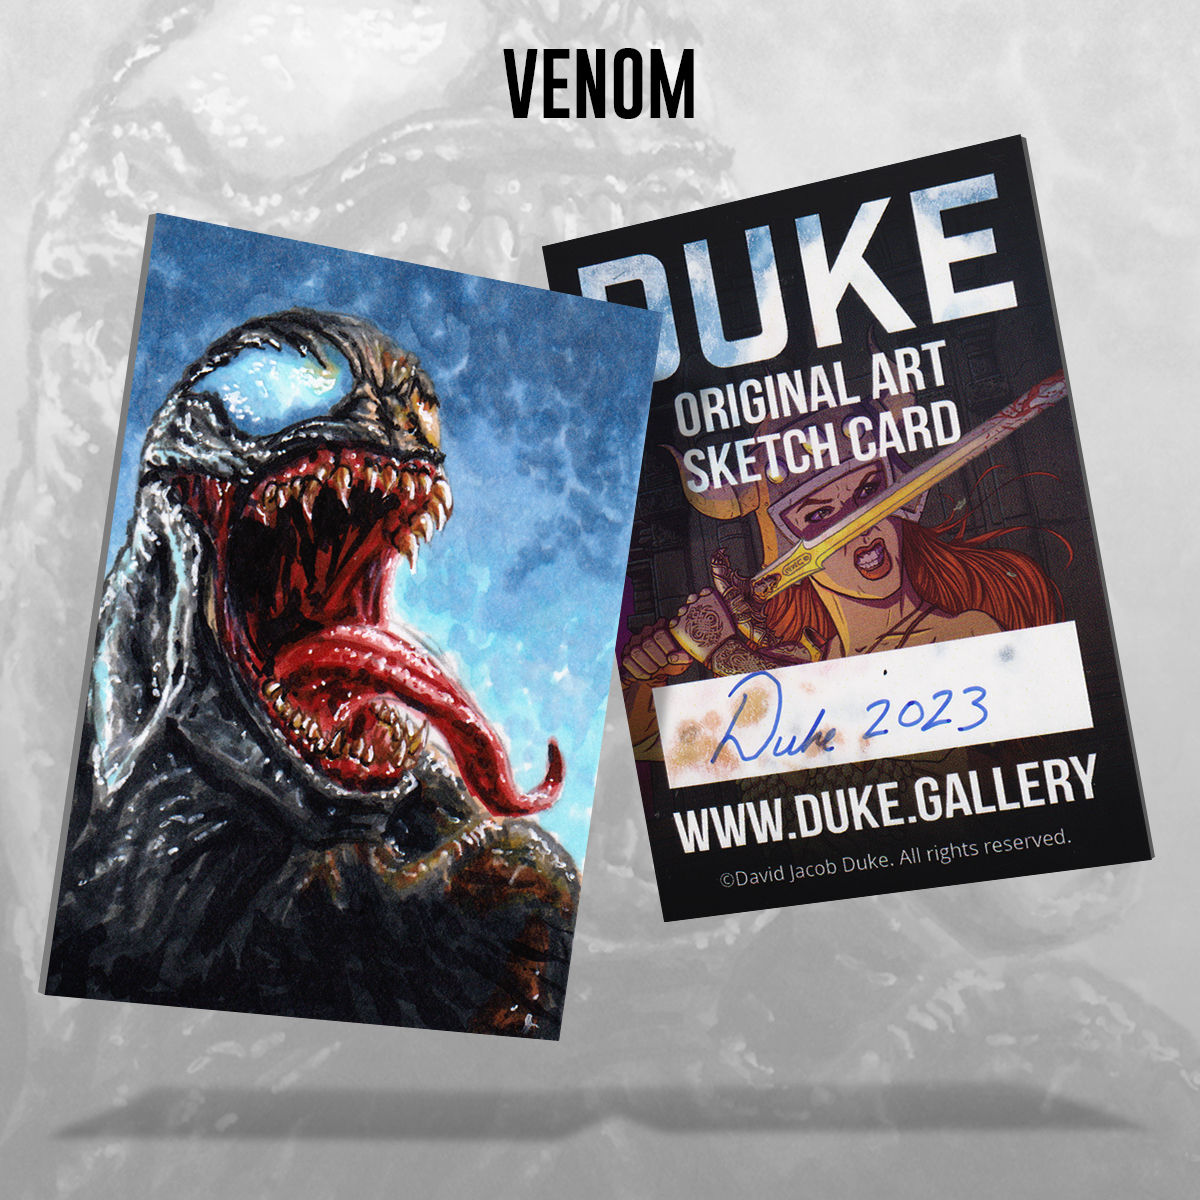 Venom Sketch Card by Duke